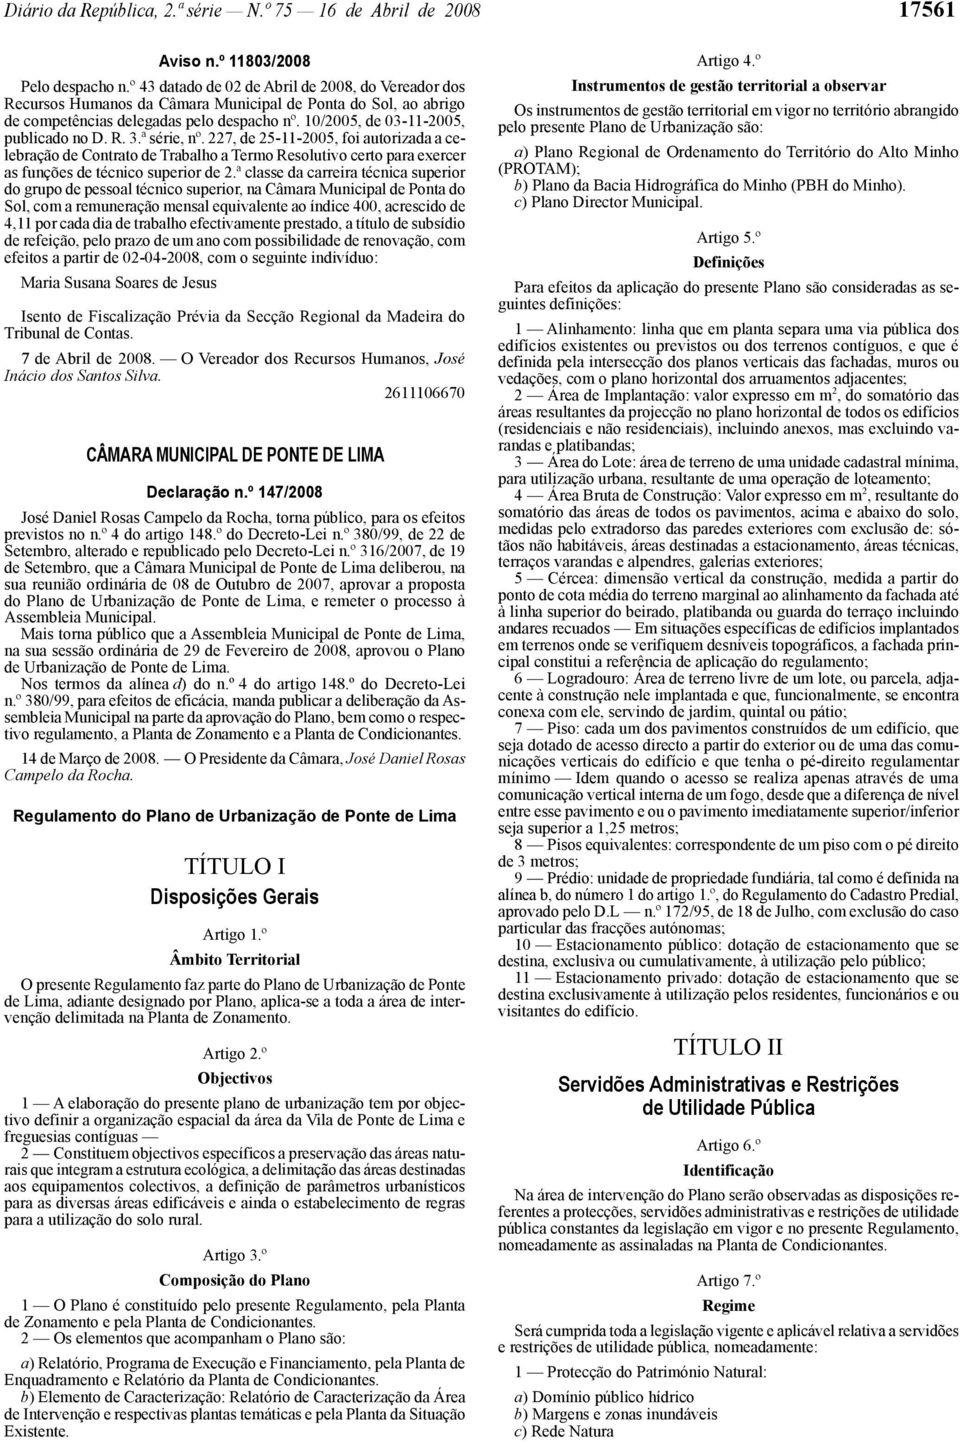 R. 3.ª série, nº. 227, de 25-11-2005, foi autorizada a celebração de Contrato de Trabalho a Termo Resolutivo certo para exercer as funções de técnico superior de 2.